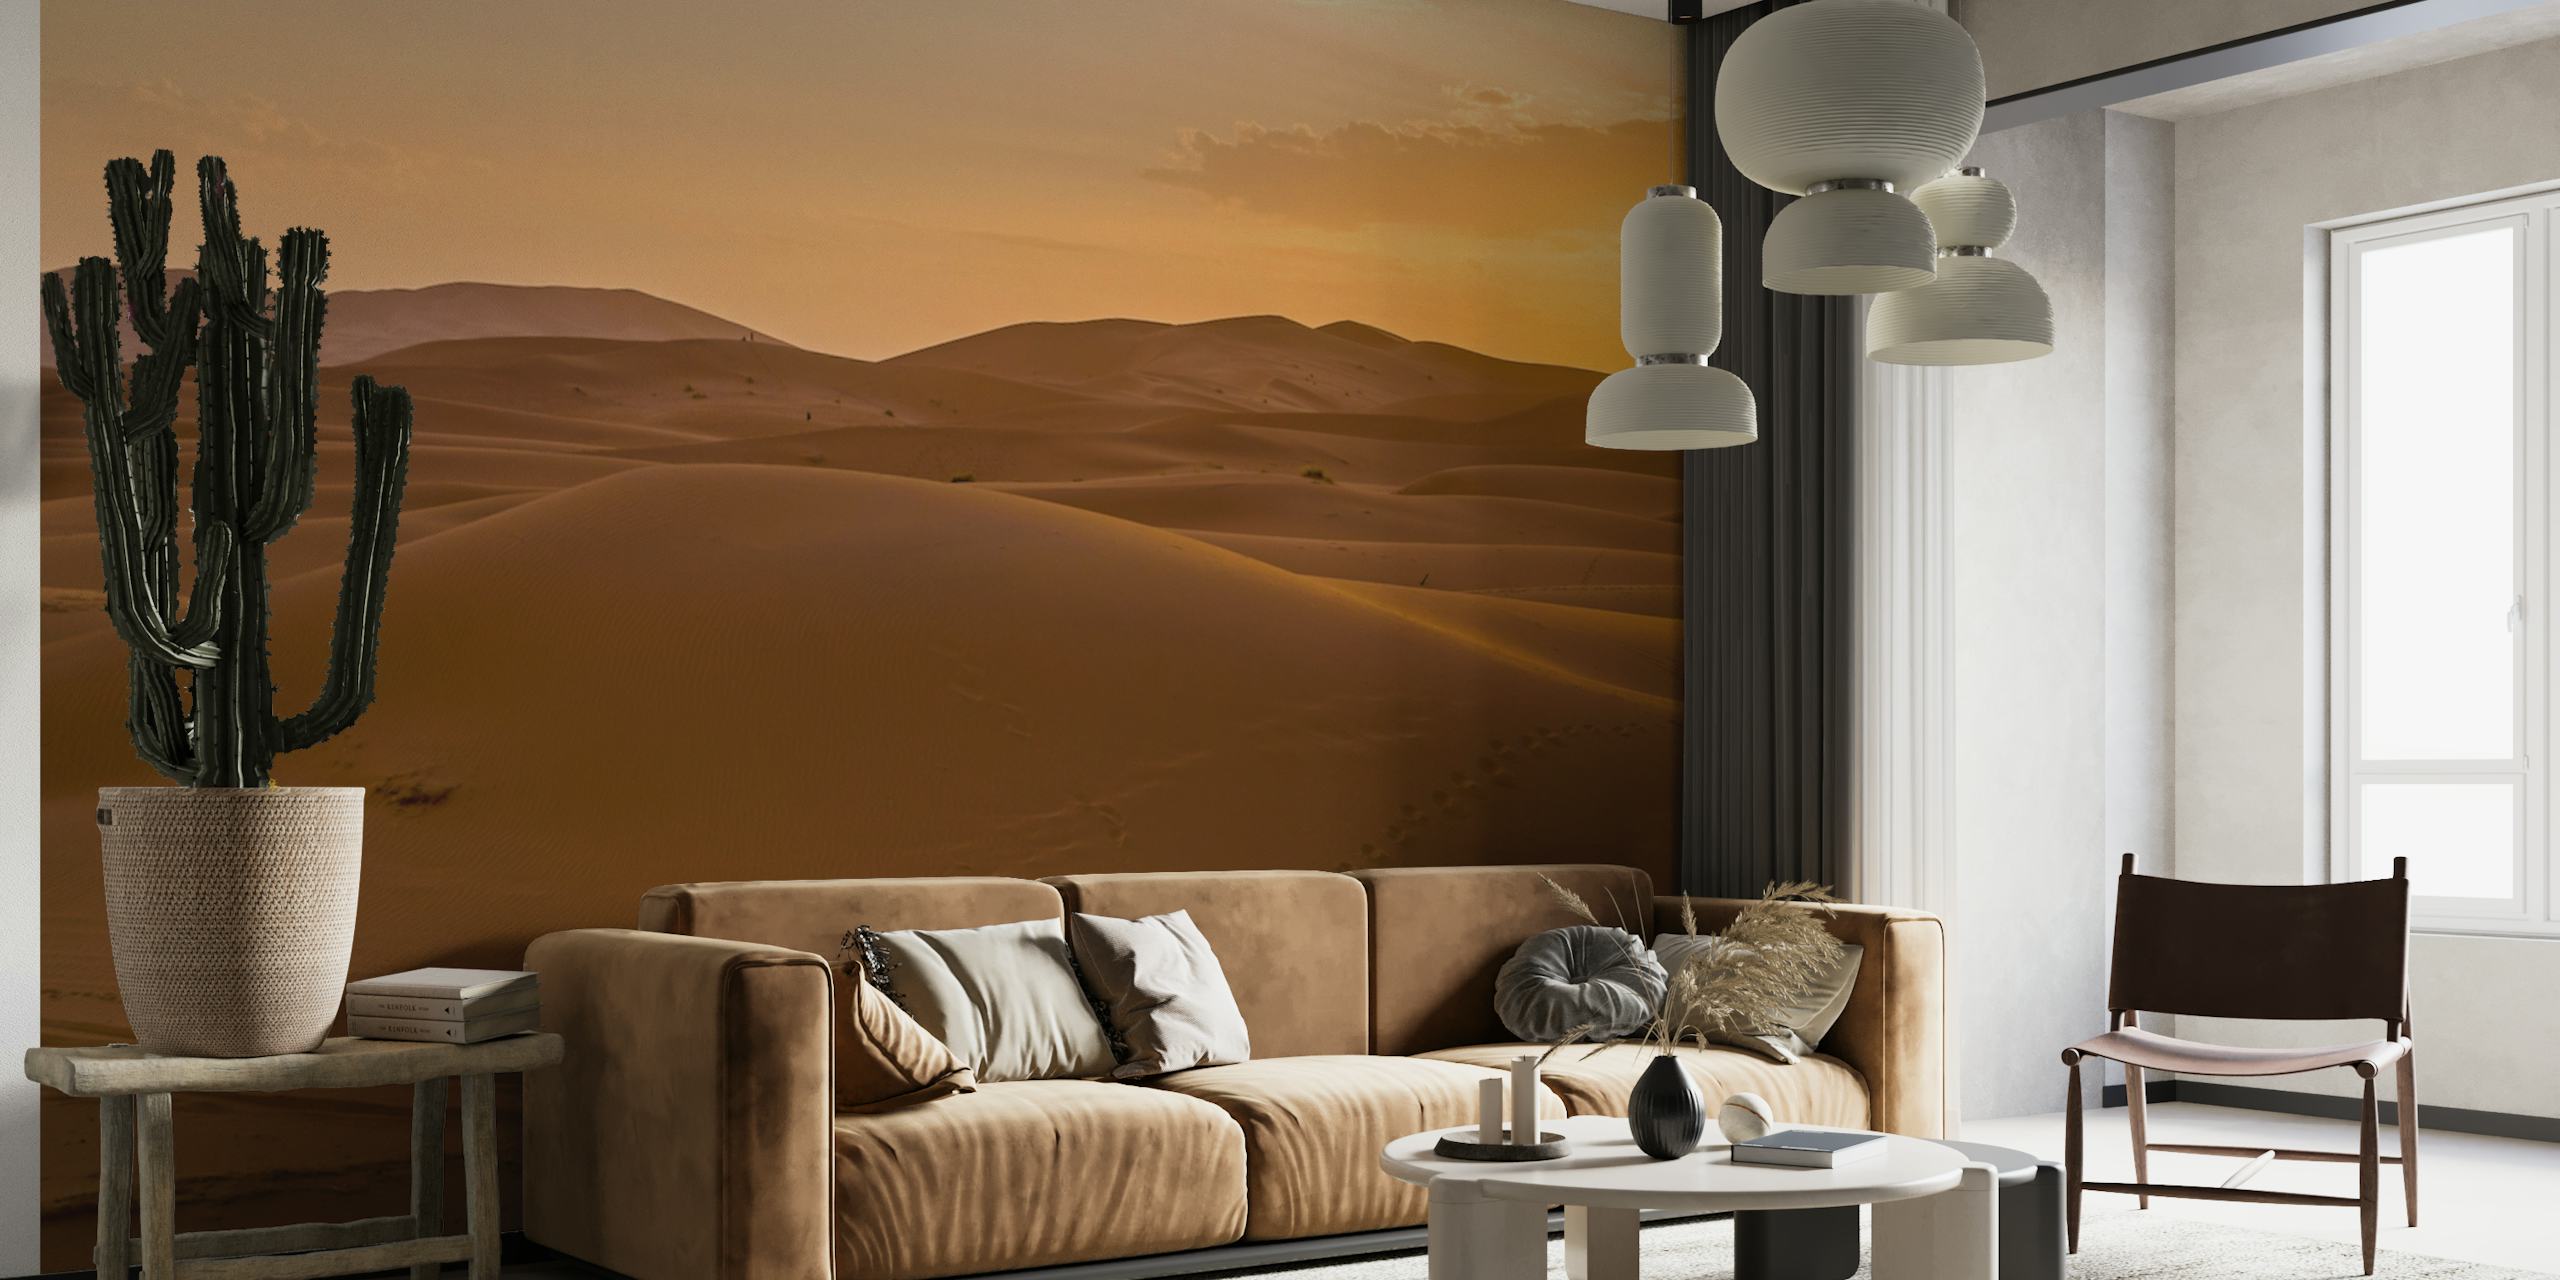 Gylden solnedgang over bølgende sanddyner i et marokkansk ørkenmaleri